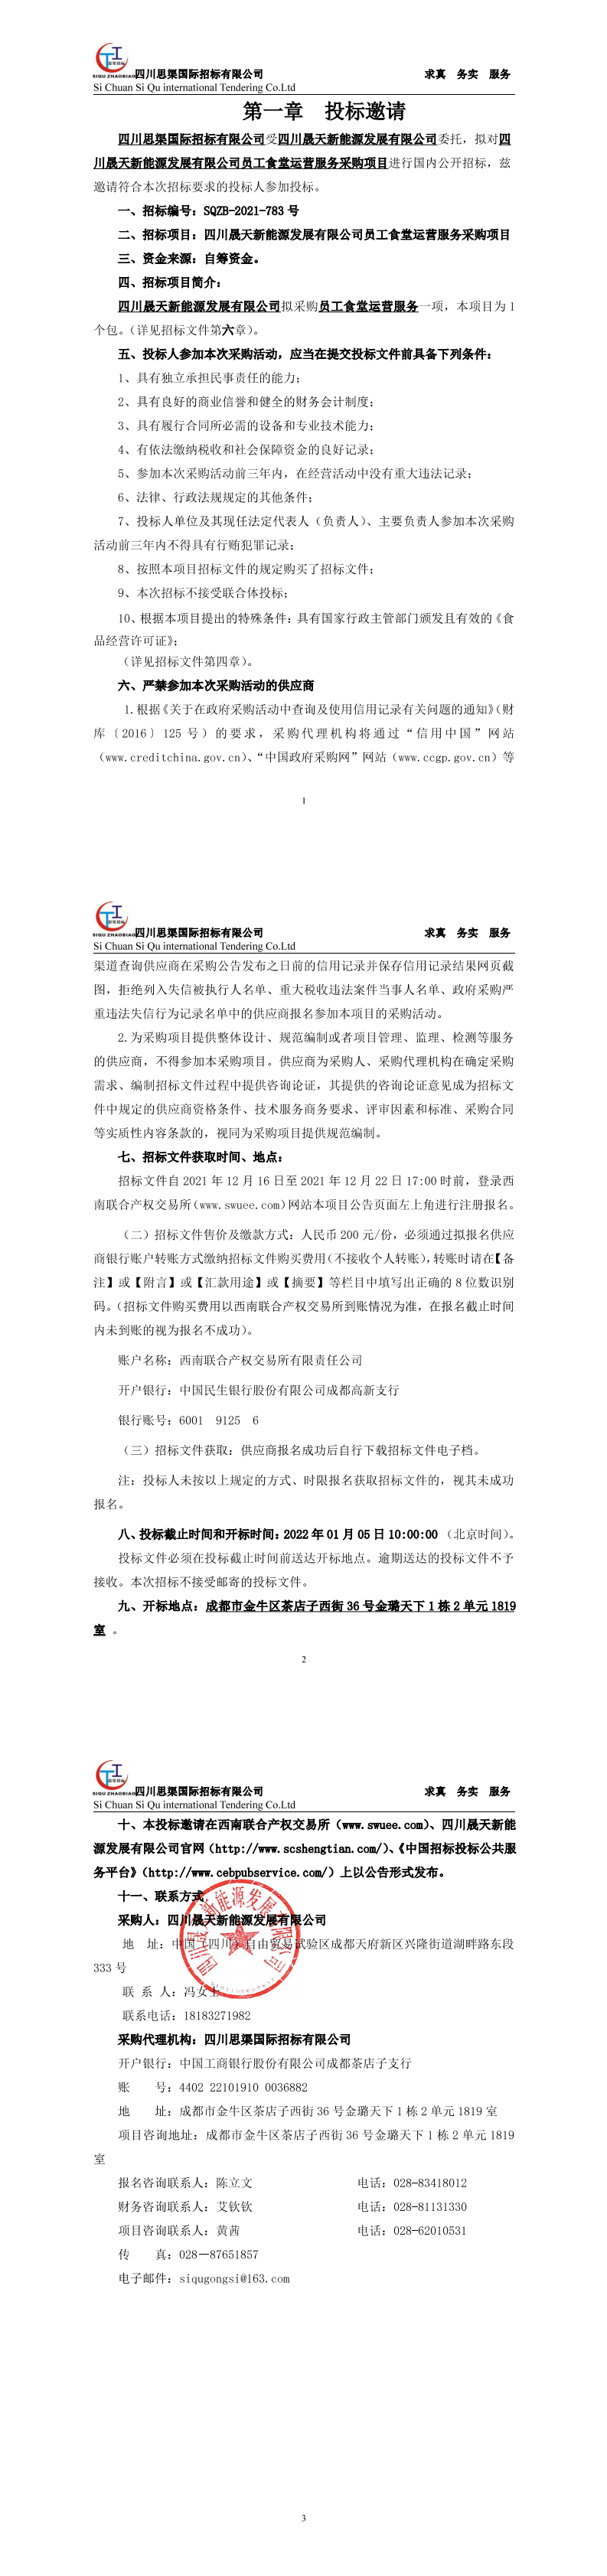 四川晟天新能源发展有限公司员工食堂运营服务采购项目招标公告_00.png